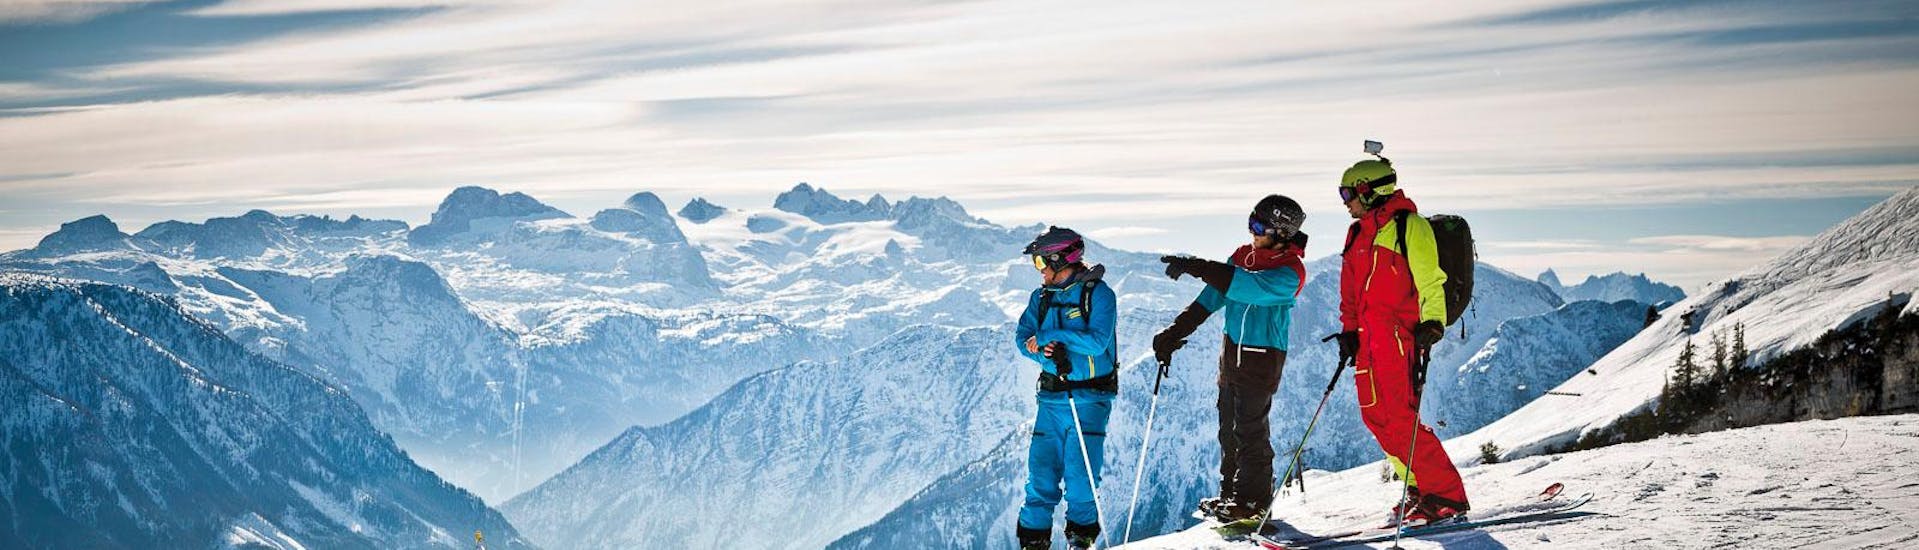 Privé skilessen voor volwassenen voor alle niveaus met Snow & Mountain Sports Loitzl Loser.